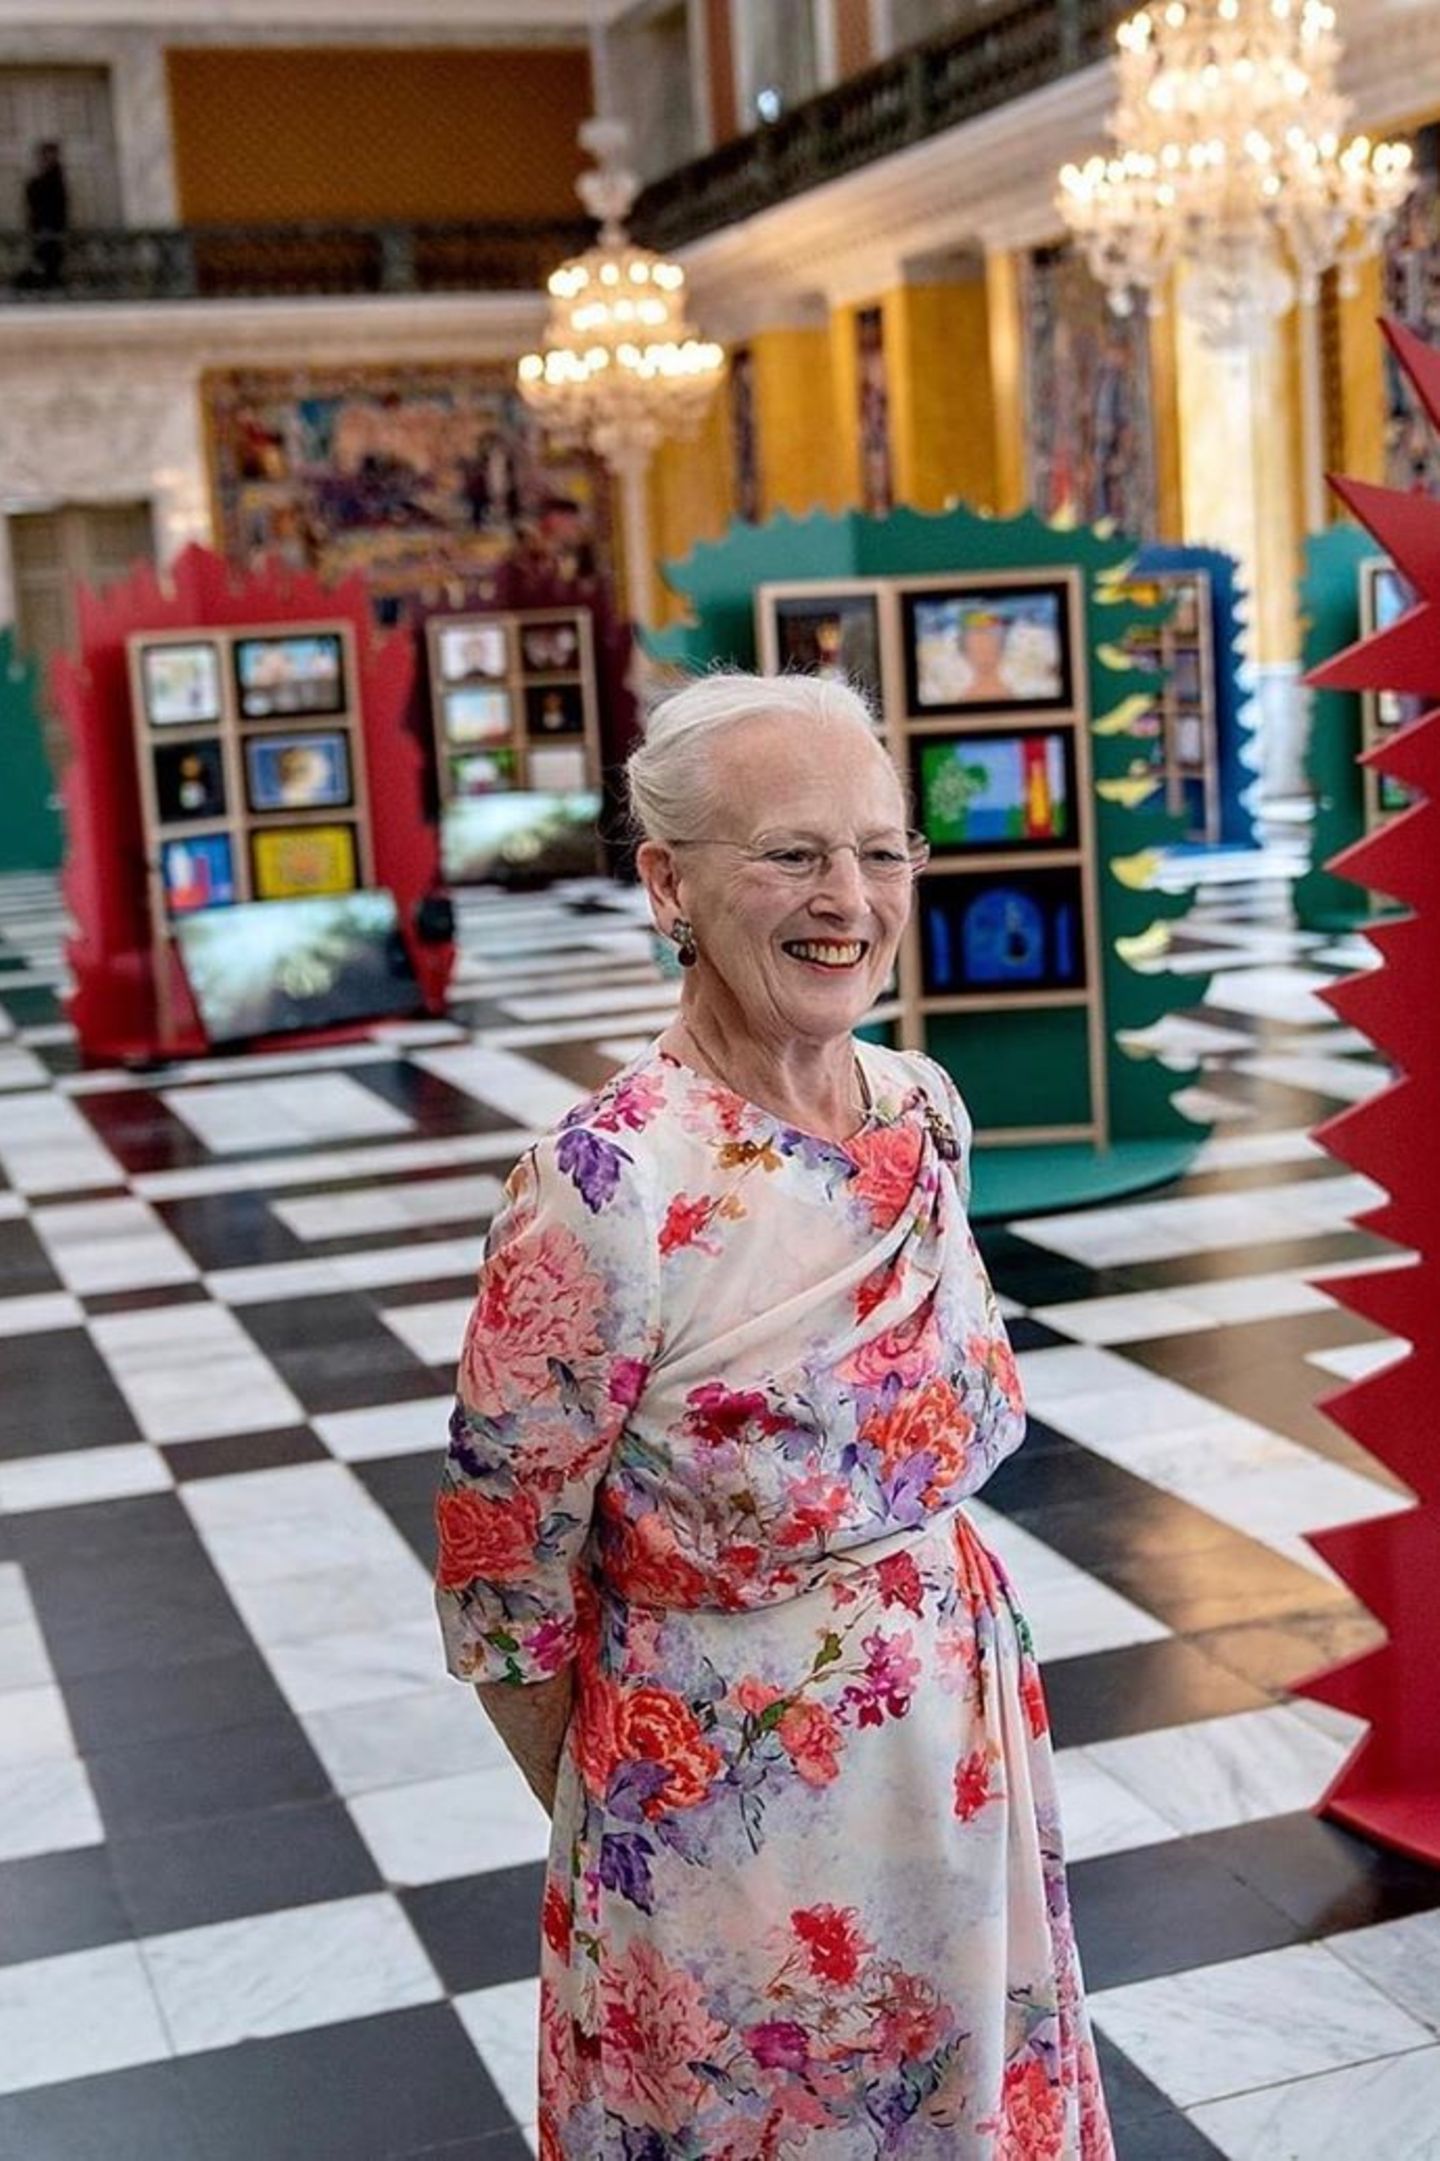 Auf Schloss Christiansborg begutachtet Königin Margrethe Kunst von Drittklässlern zu den Themen "Königin" und "Meine Gemeinde". Dabei passt die 80-Jährige mit ihrem wunderschön geblümten Kleid perfekt ins bunte Setting …